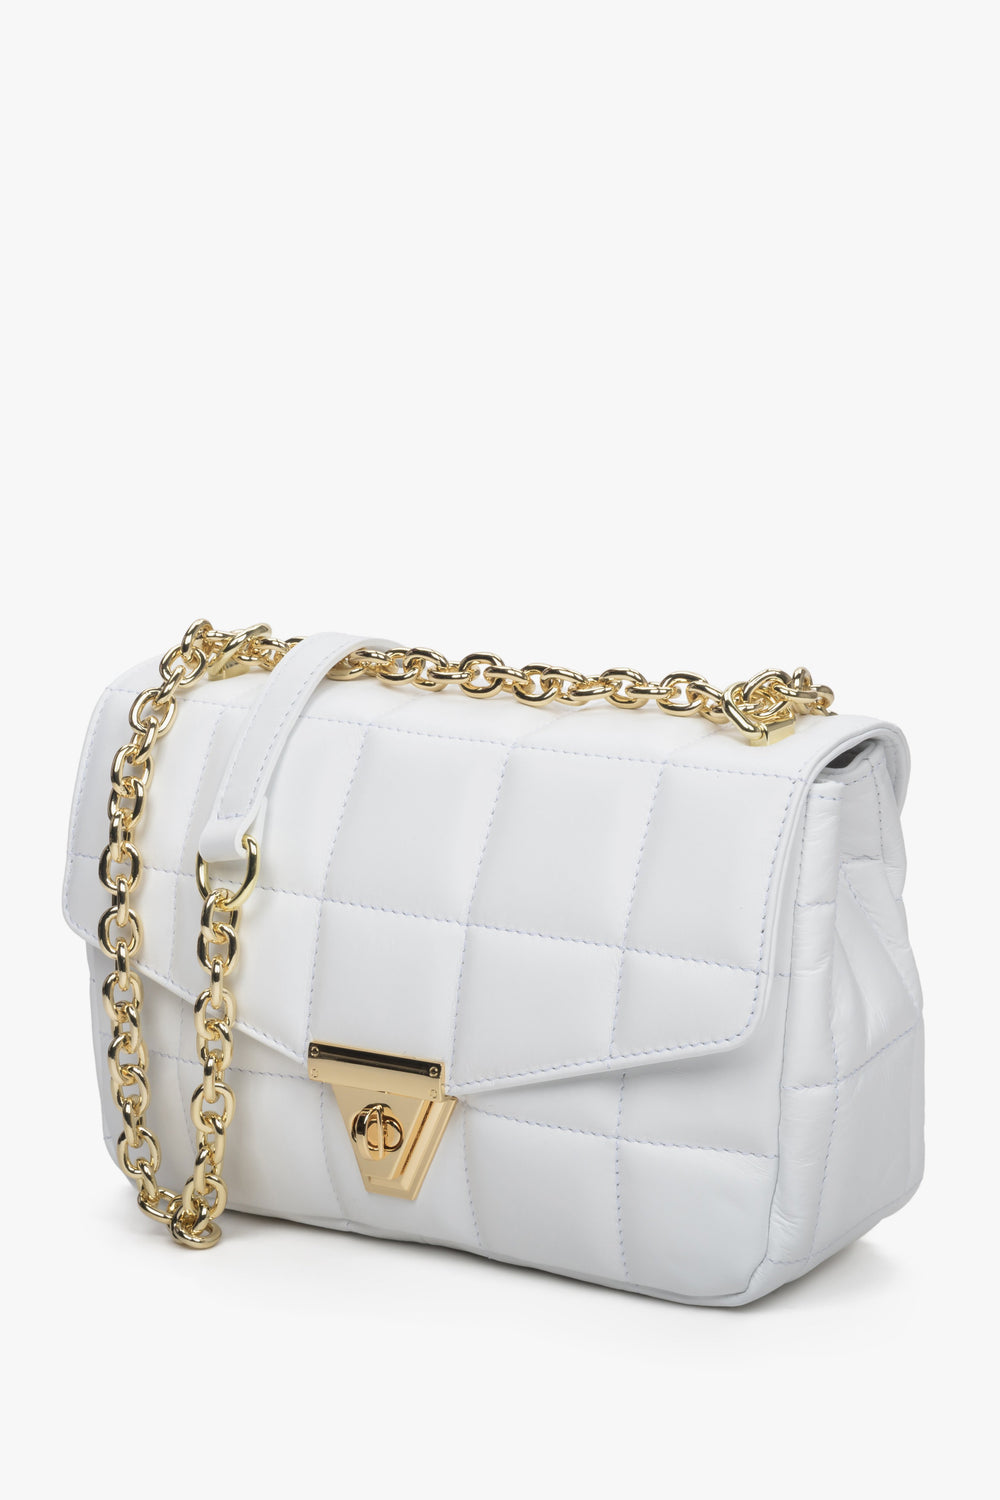 Women's White Leather Handbag Made in Italy Estro ER00111577.